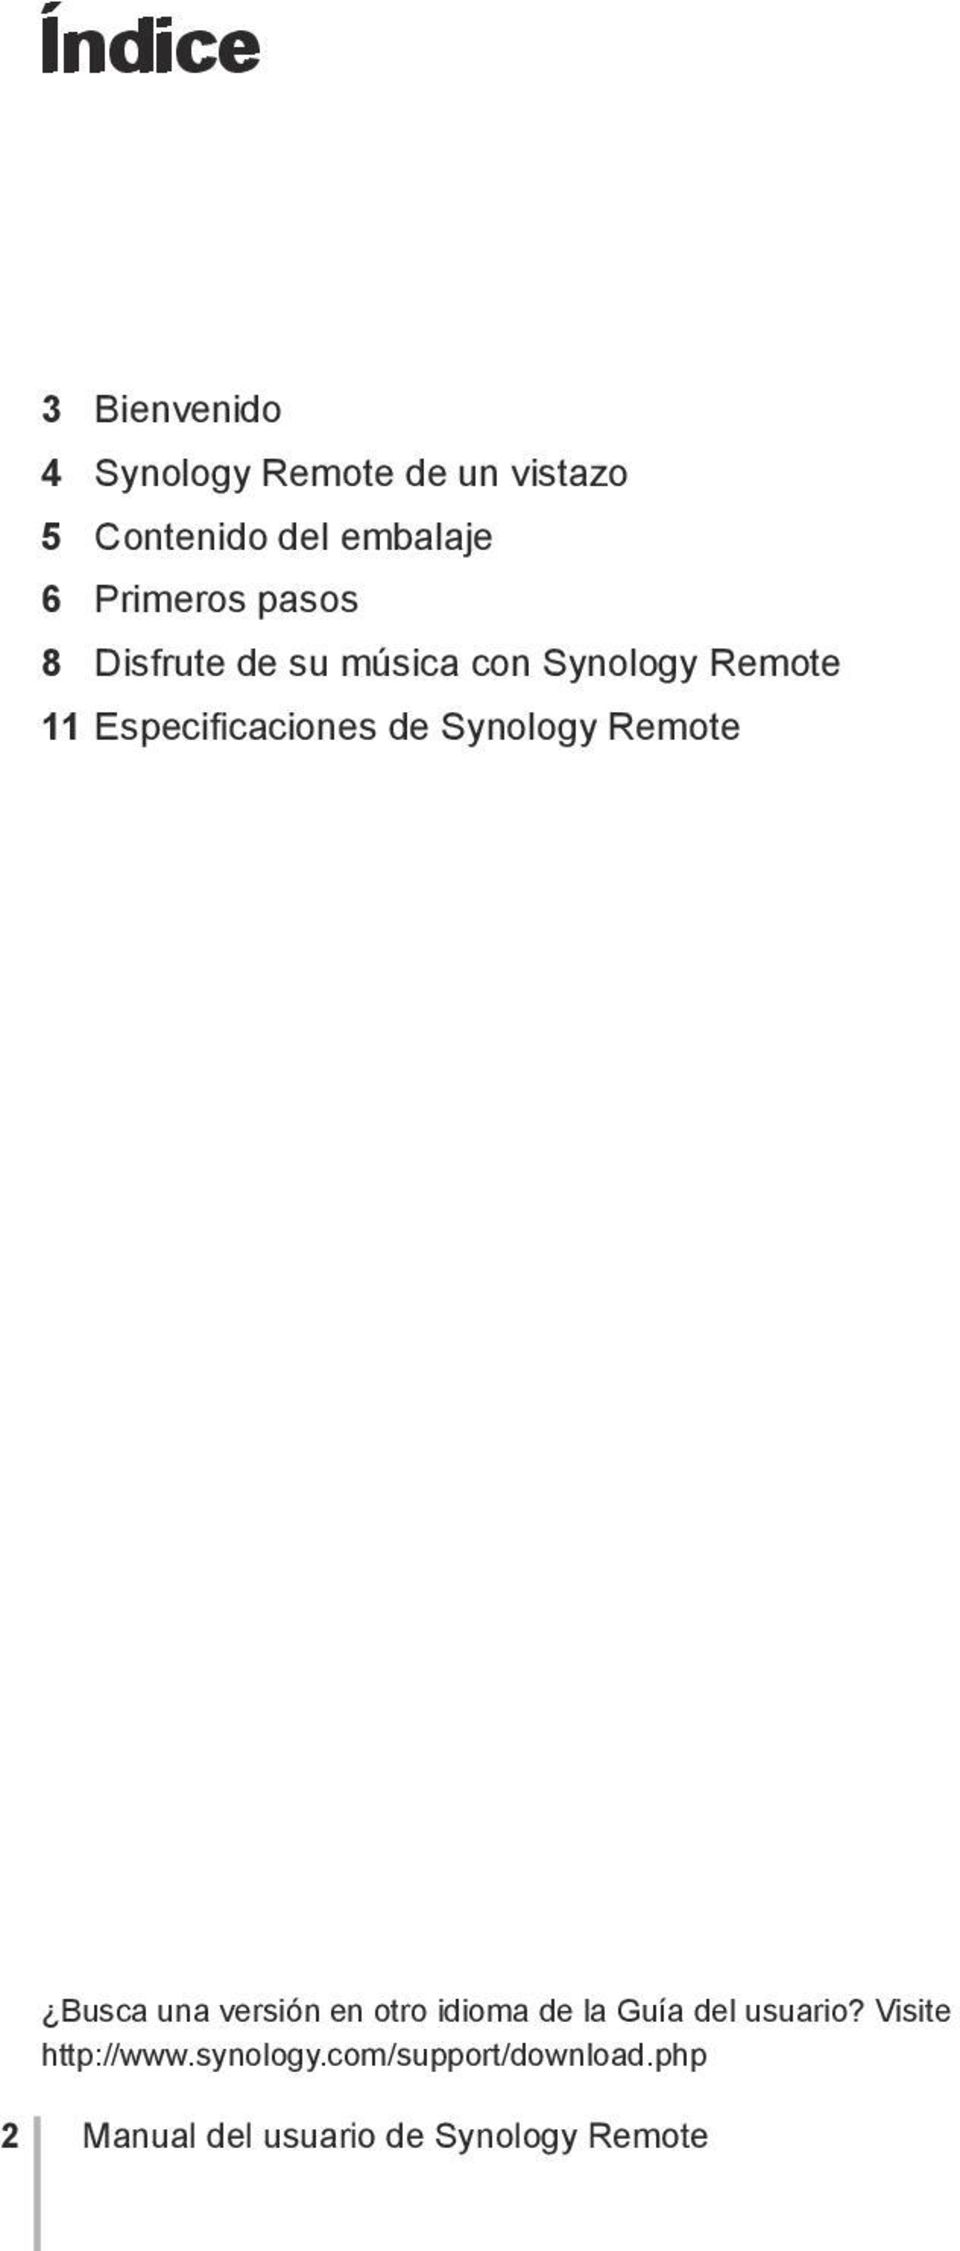 Synology Remote Busca una versión en otro idioma de la Guía del usuario?